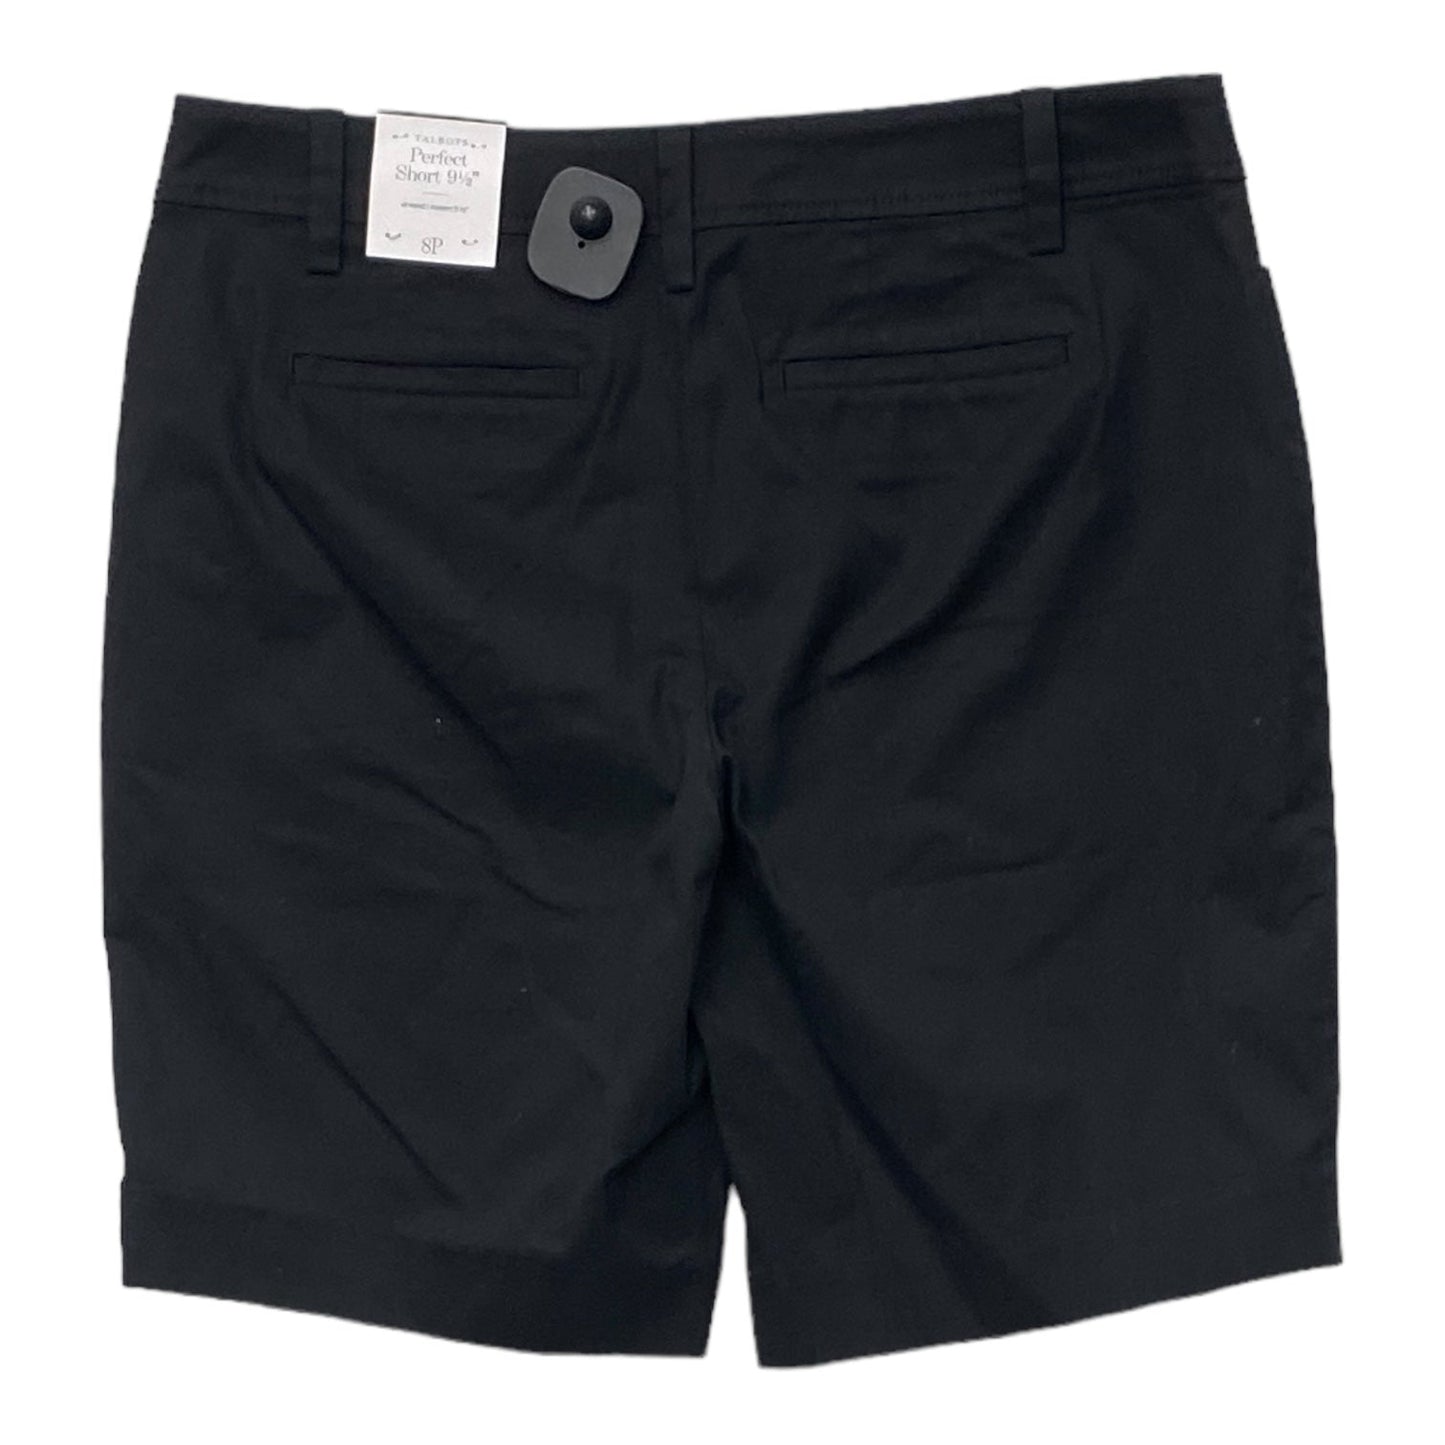 Black Shorts Talbots, Size 8petite